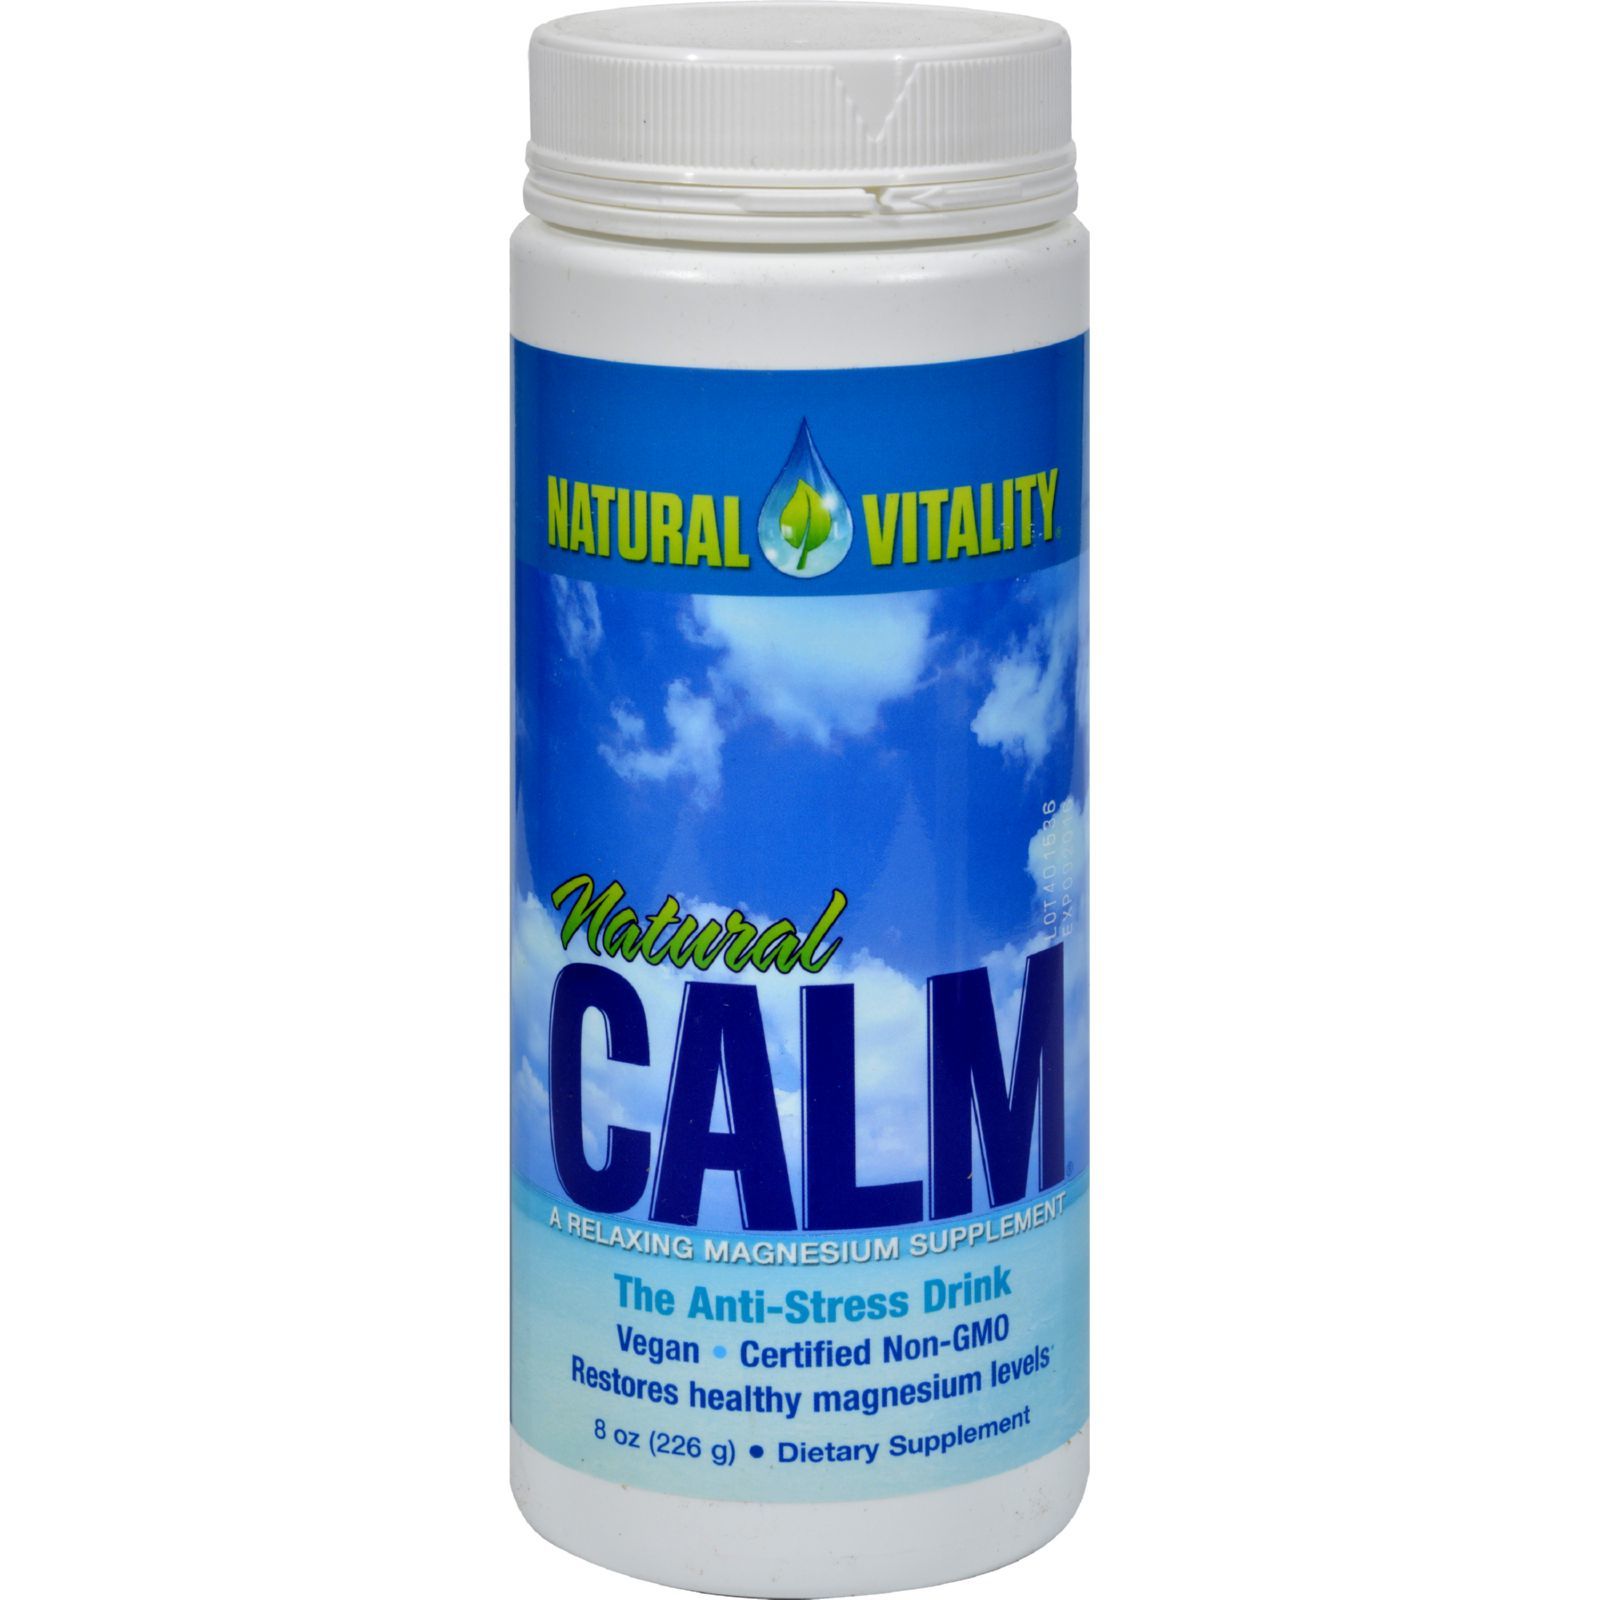 Natural calm. Магний натурал маг порошок. Цитрат магния натурал маг. Natural Vitality Calm Original. Calm витамин магний.